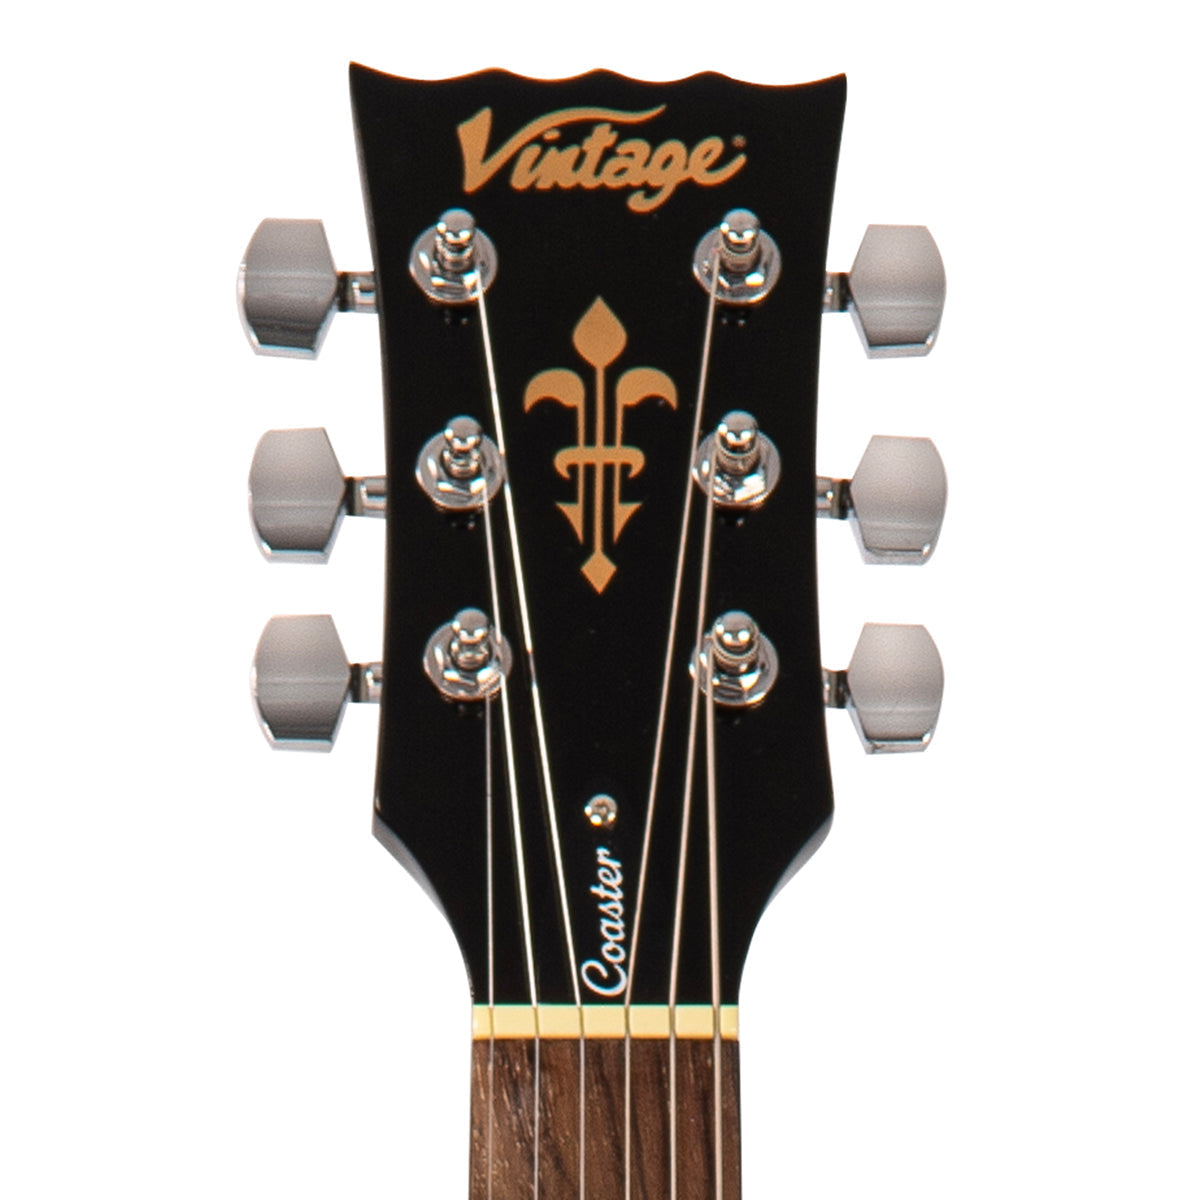 Vintage V10 Coaster Series Electric Guitar Pack ~ Left Hand Boulevard Black, Left Hand Electric Guitars for sale at Richards Guitars.